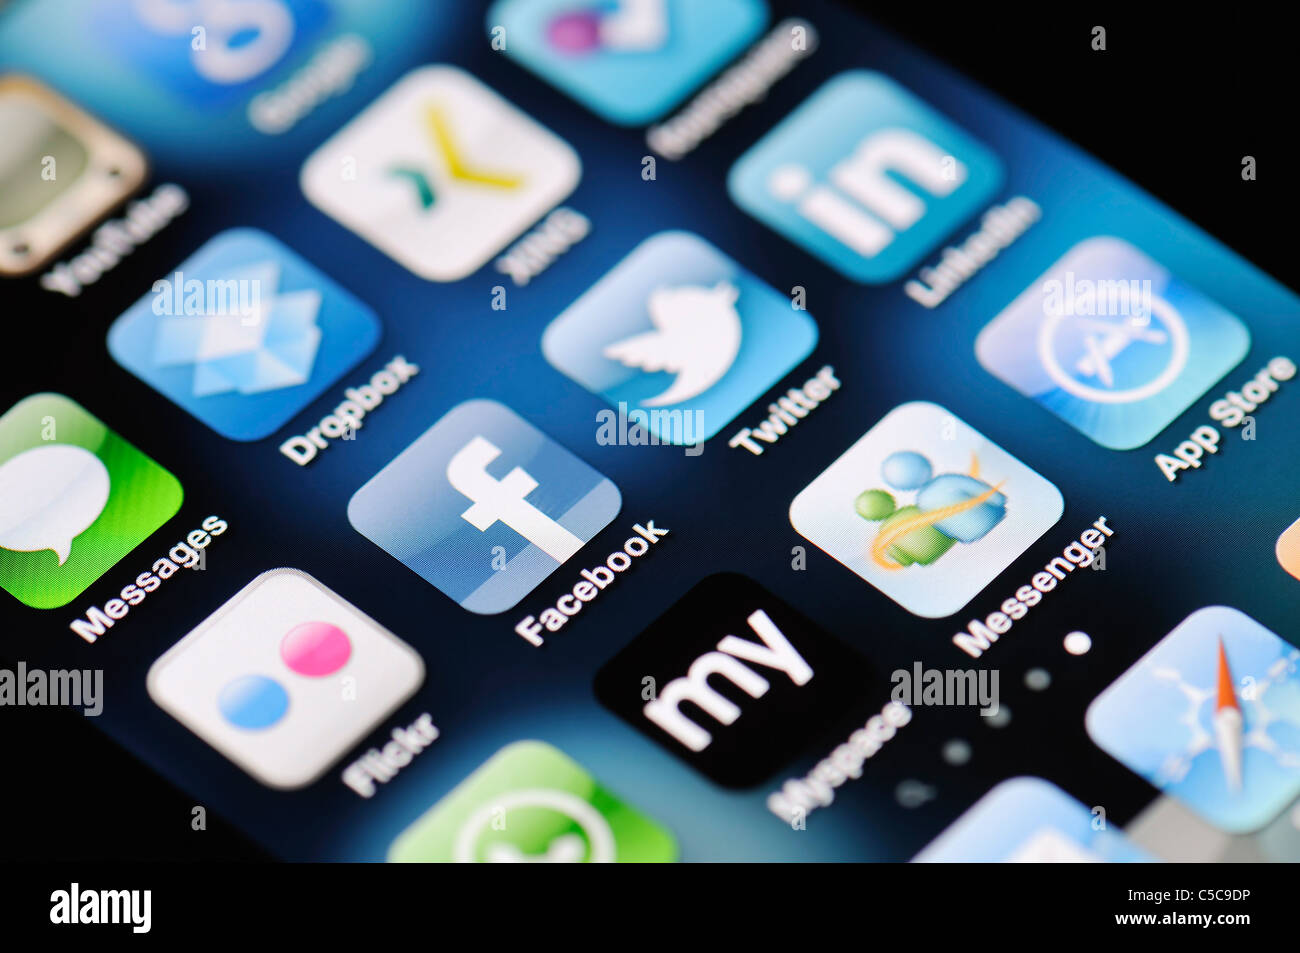 Un gros plan d'un Apple iPhone 4 écran montrant l'App Store et de diverses applications de médias sociaux Banque D'Images